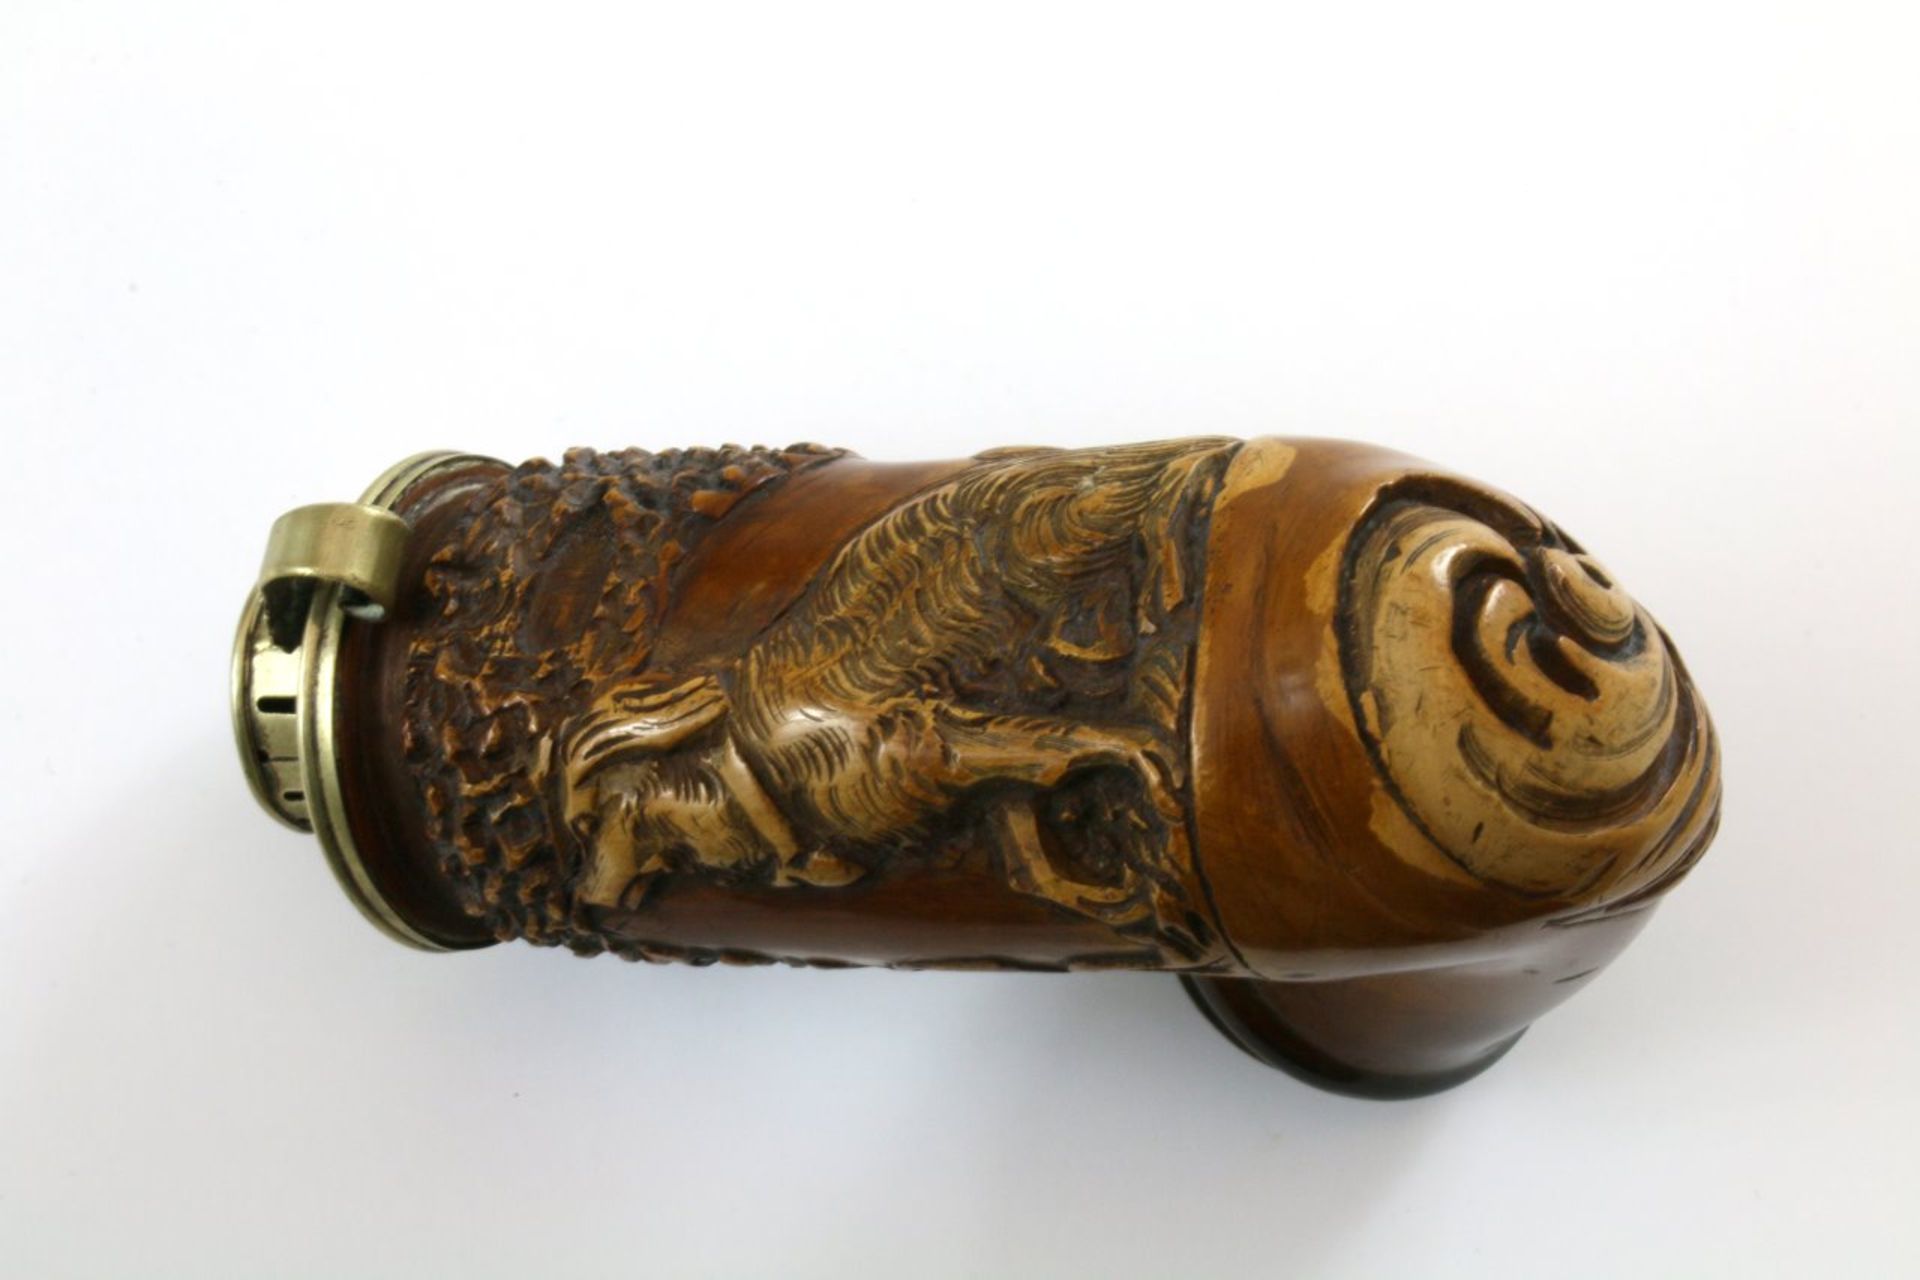 Meerschaumpfeife - 19. Jahrhundert Rohr / Wien Gebogene Form, Pfeifenkopf mit reliefierter - Bild 3 aus 3